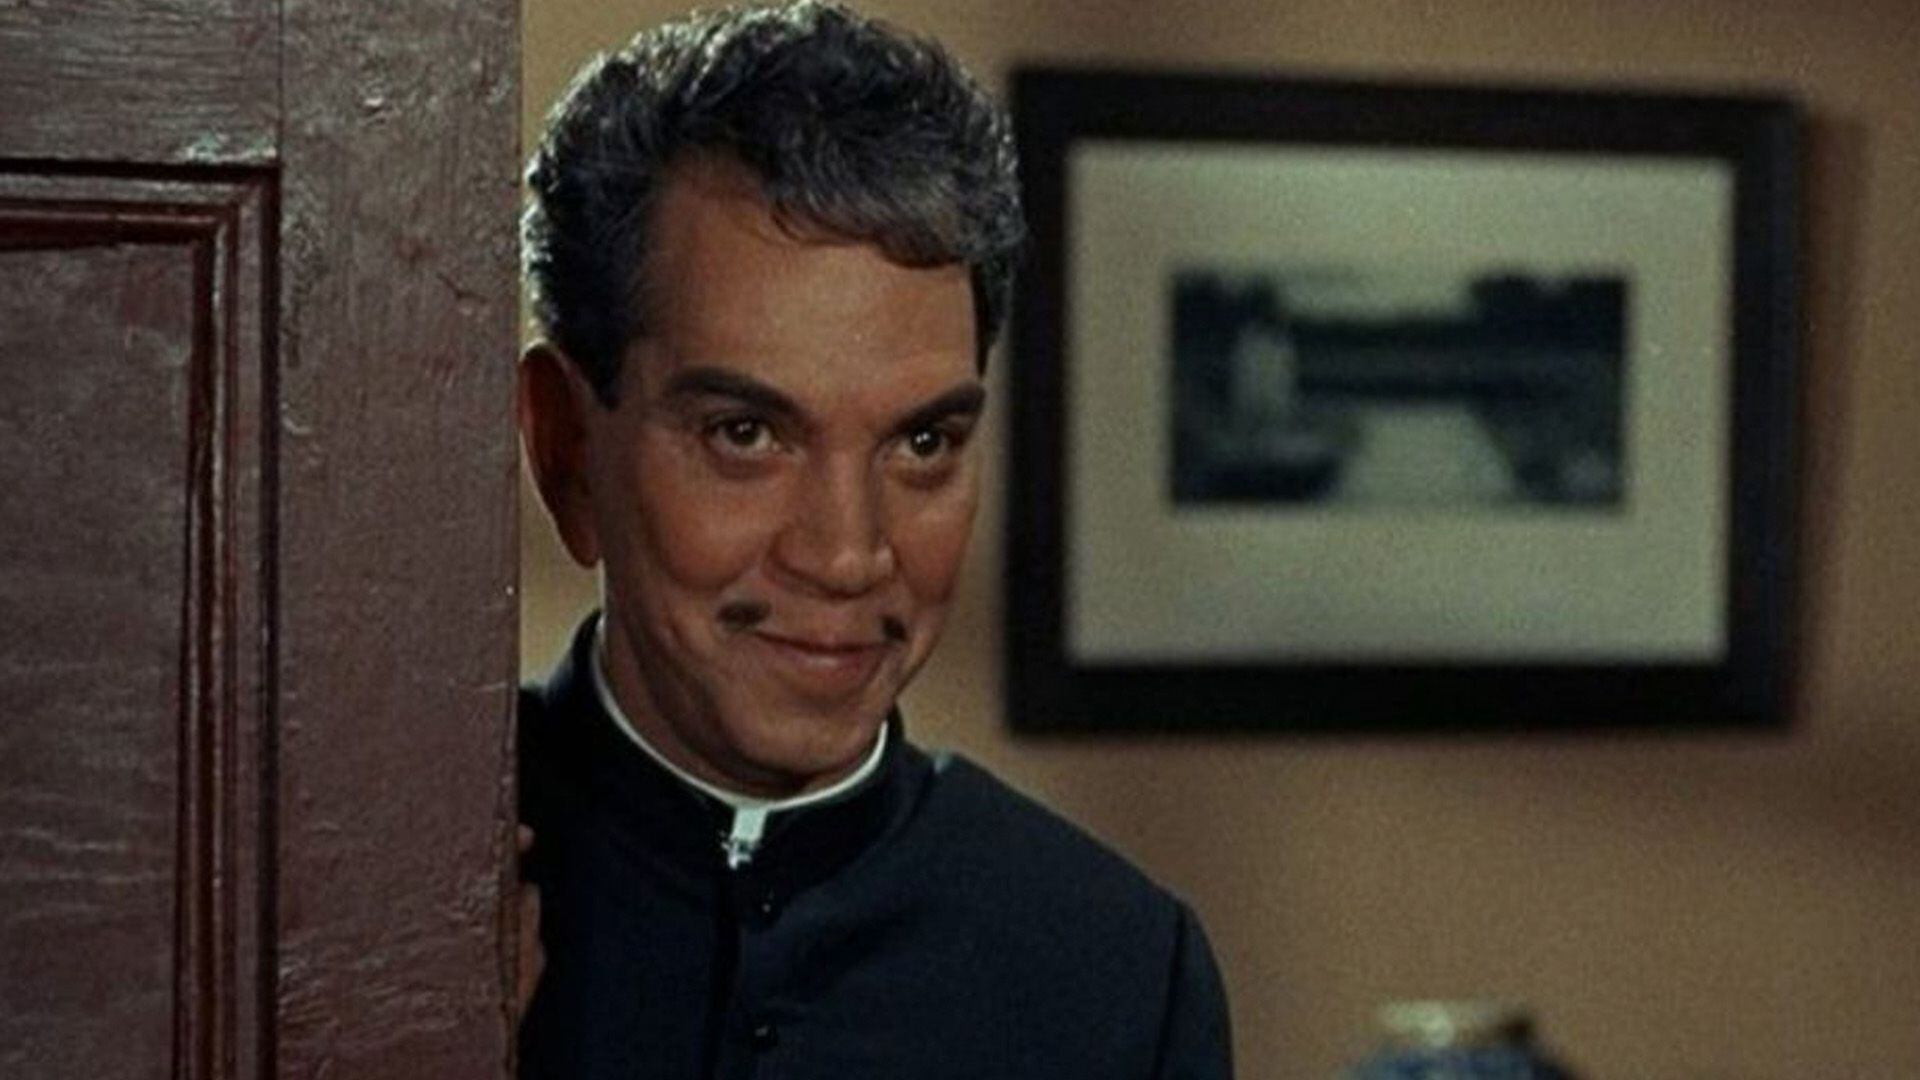 El actor mexicano Mario Moreno generó controversia con la película, pues aunque él aseguró que promovía el catolicismo otros aseguraron que se burlaba de la fe. Cantinflas